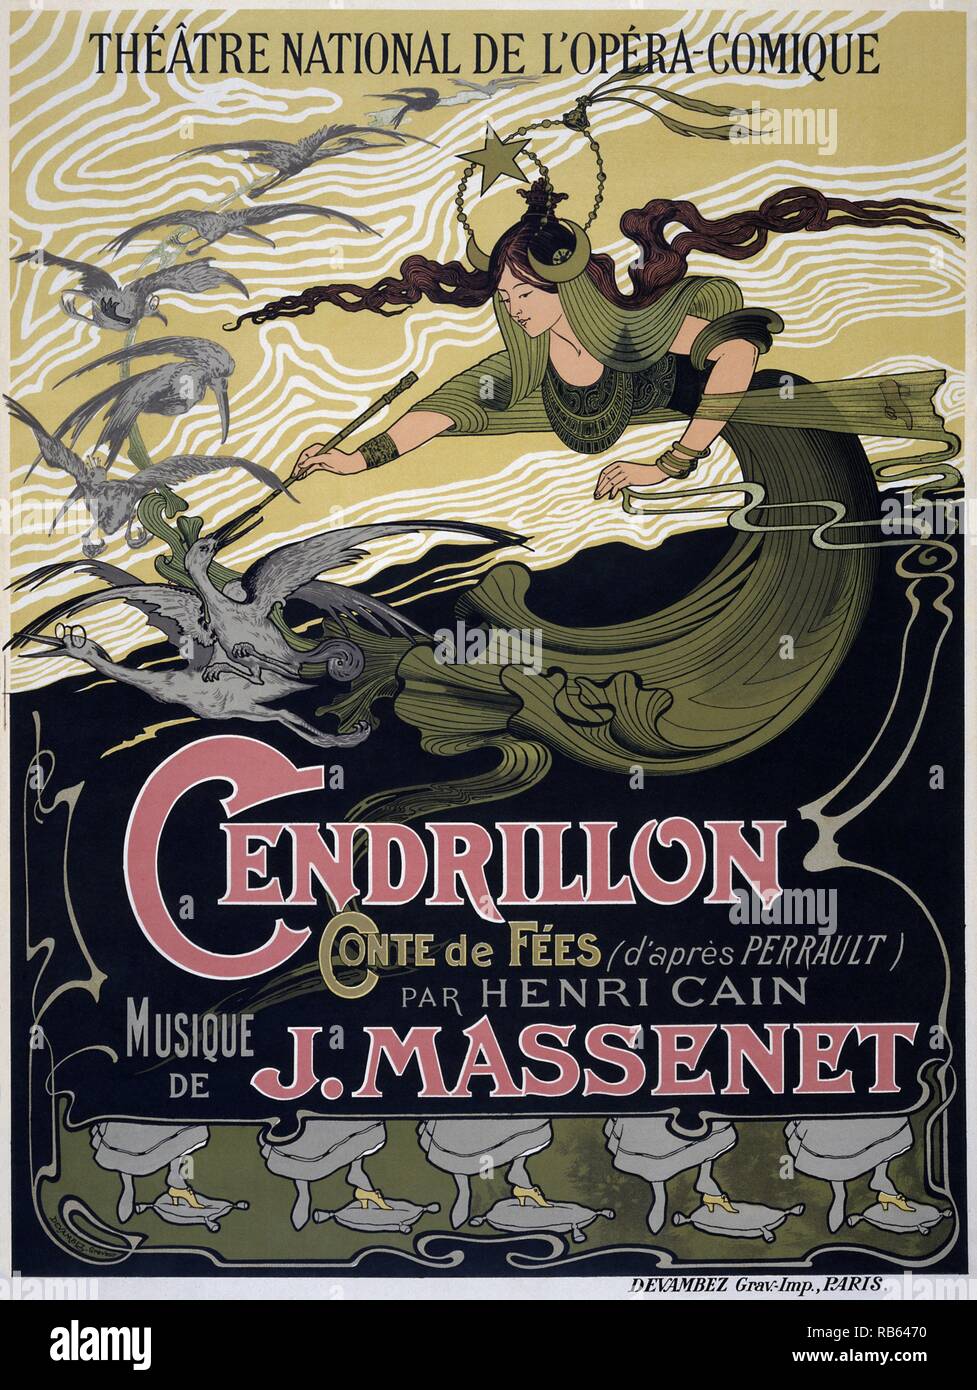 Cendrillon (Aschenputtel) ist eine Oper - Als "Märchen" bezeichnet - in vier Akten von Jules Massenet an einen französischen Libretto von Henri CaA-n auf perrault's 1698 Version des Aschenputtel Märchen. Es war seine Uraufführung am 24. Mai 1899 in Paris gegeben. Stockfoto